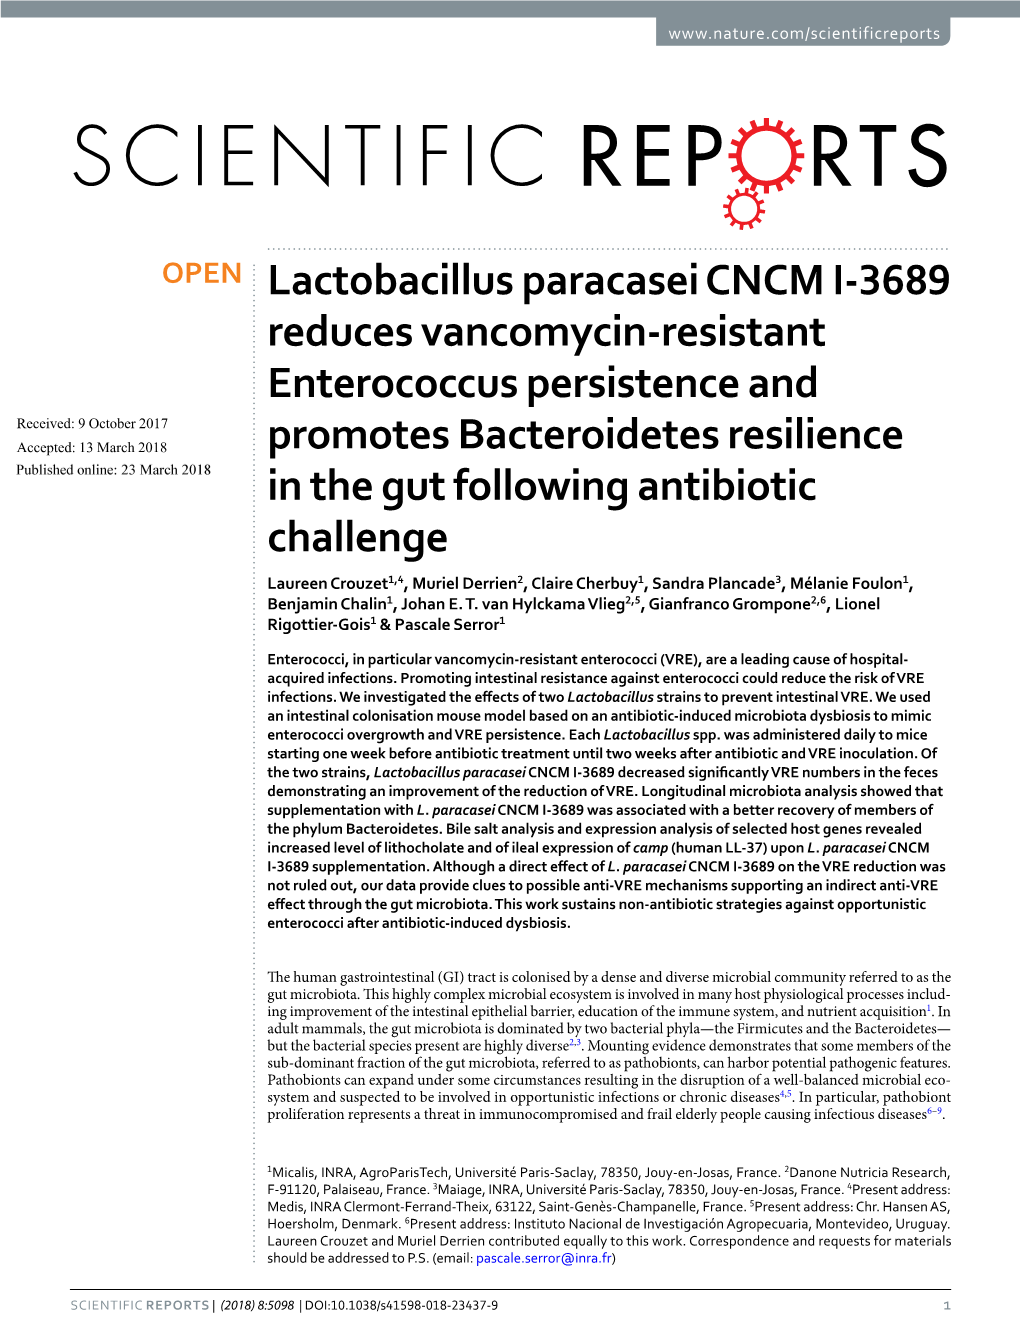 Lactobacillus Paracasei CNCM I-3689 Reduces Vancomycin